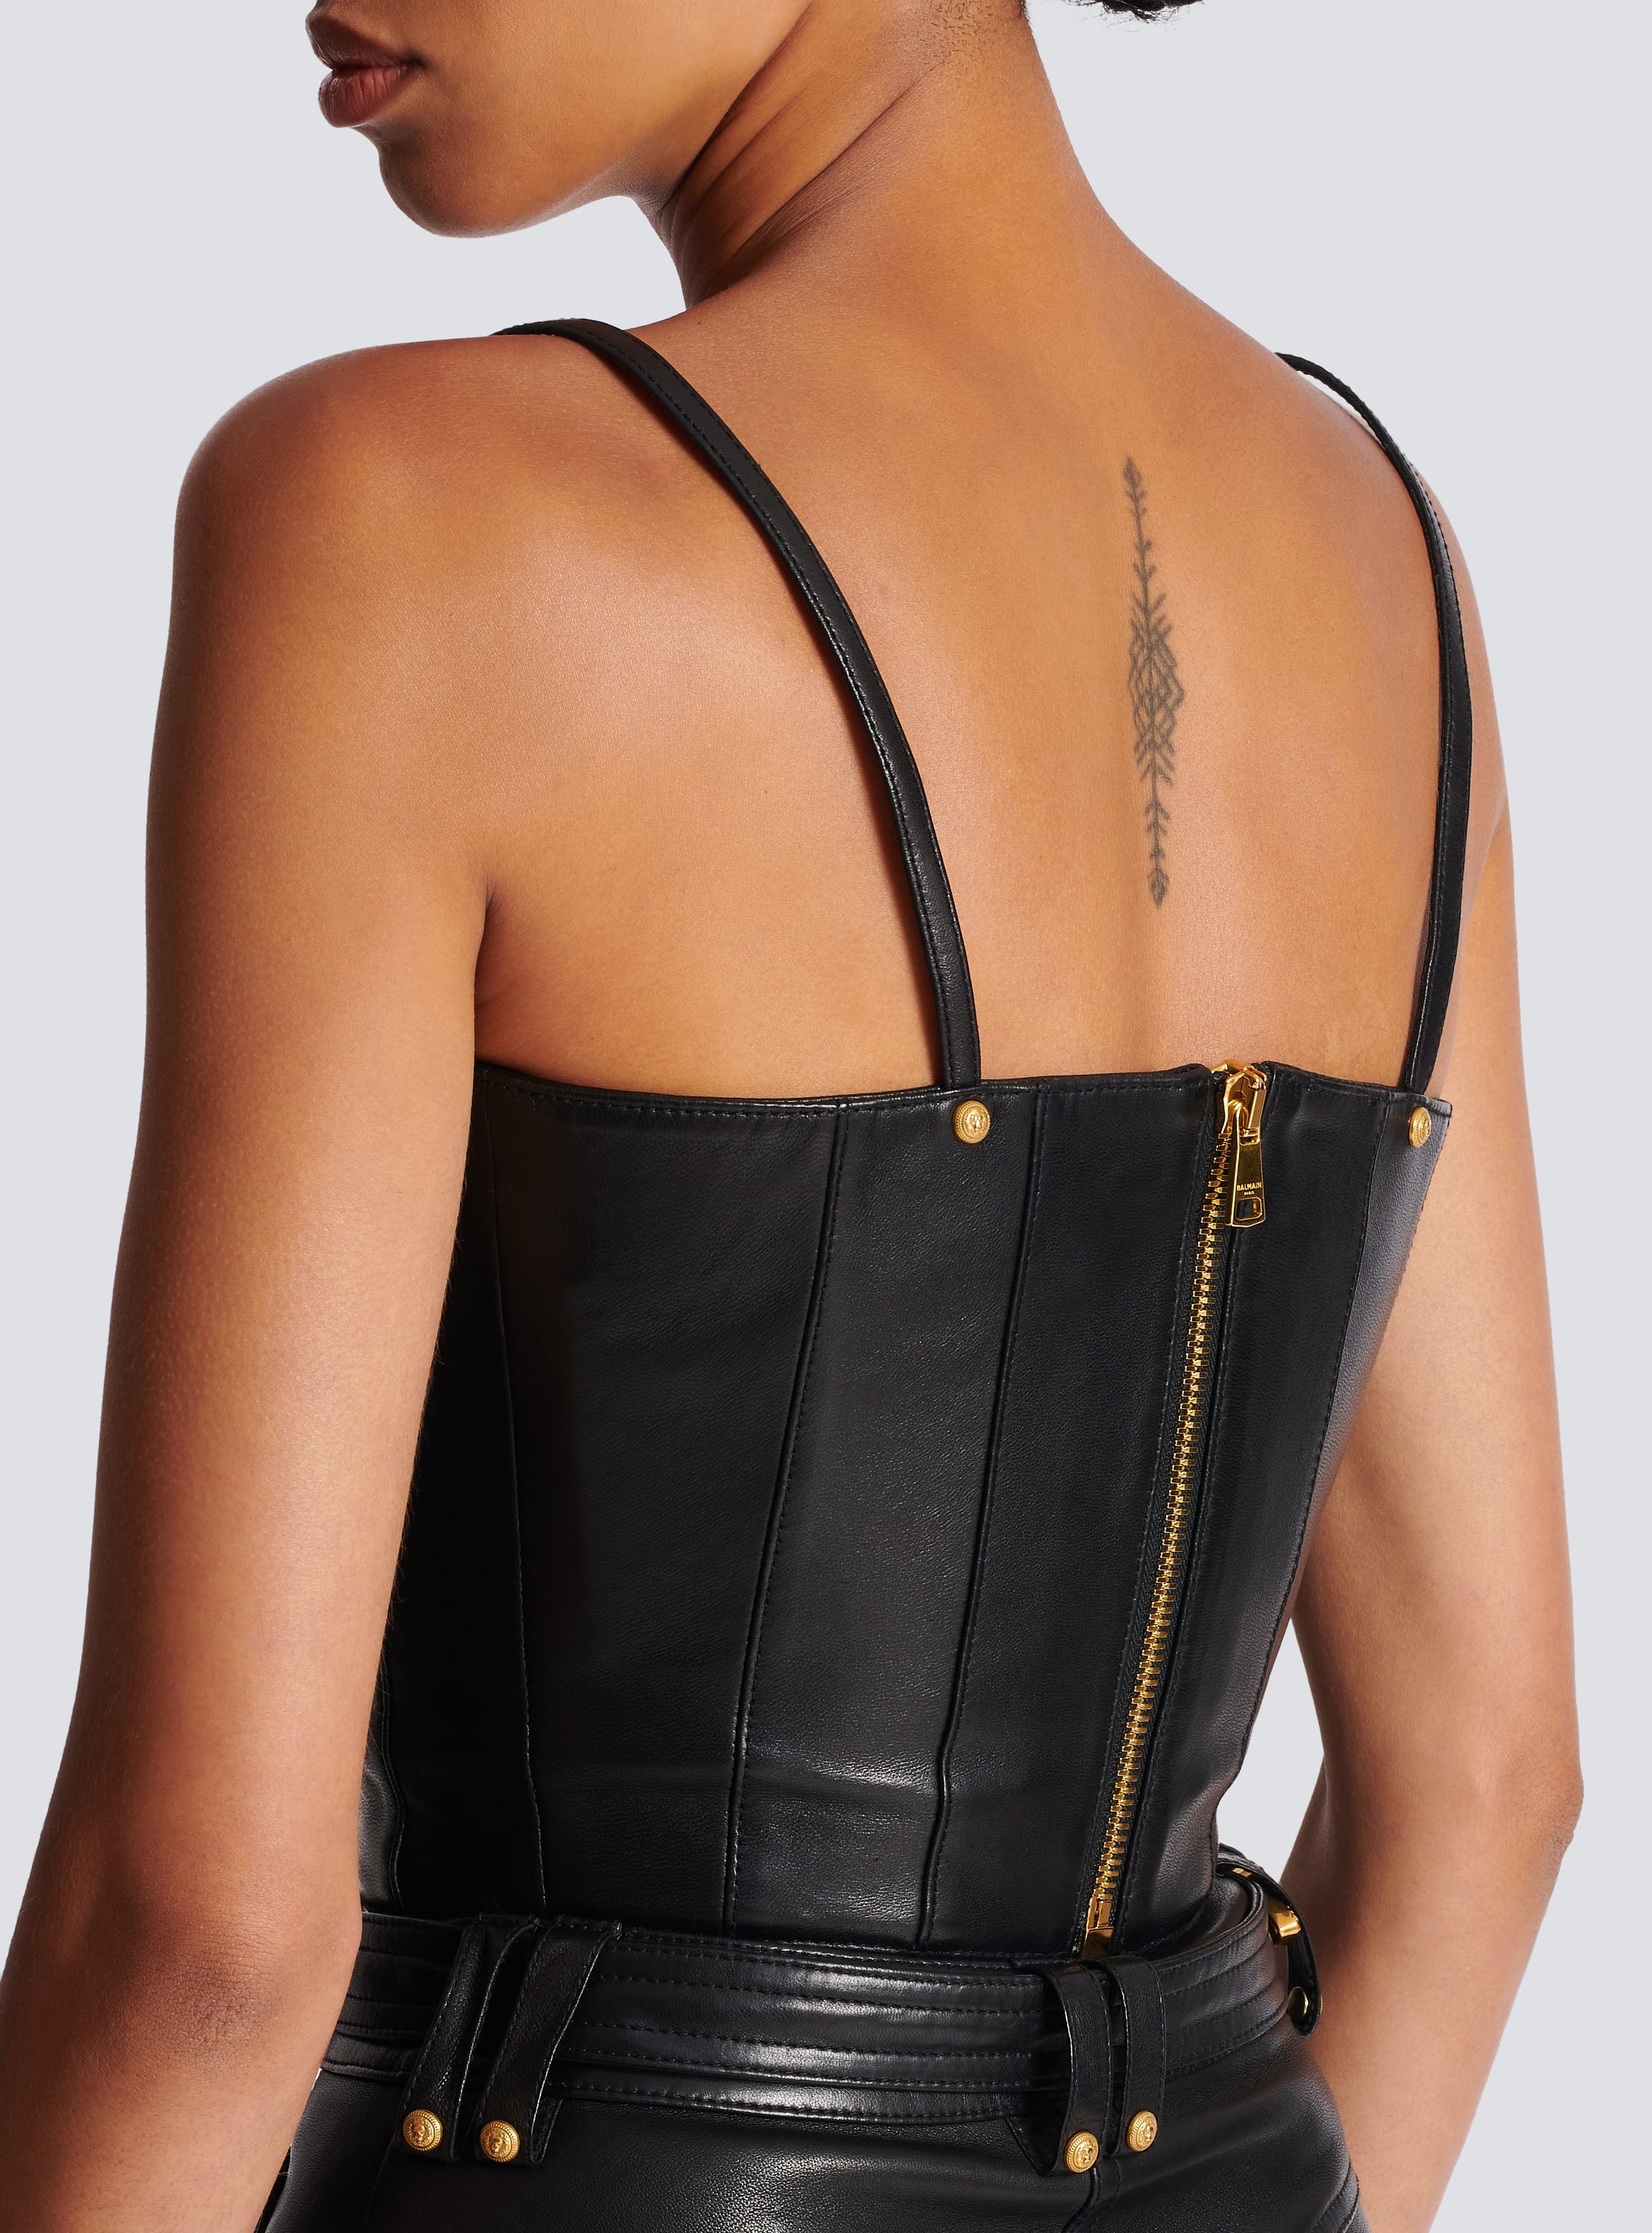 BRETELLES FEMMES, en cuir, sur mesures / Fashion Women's leather